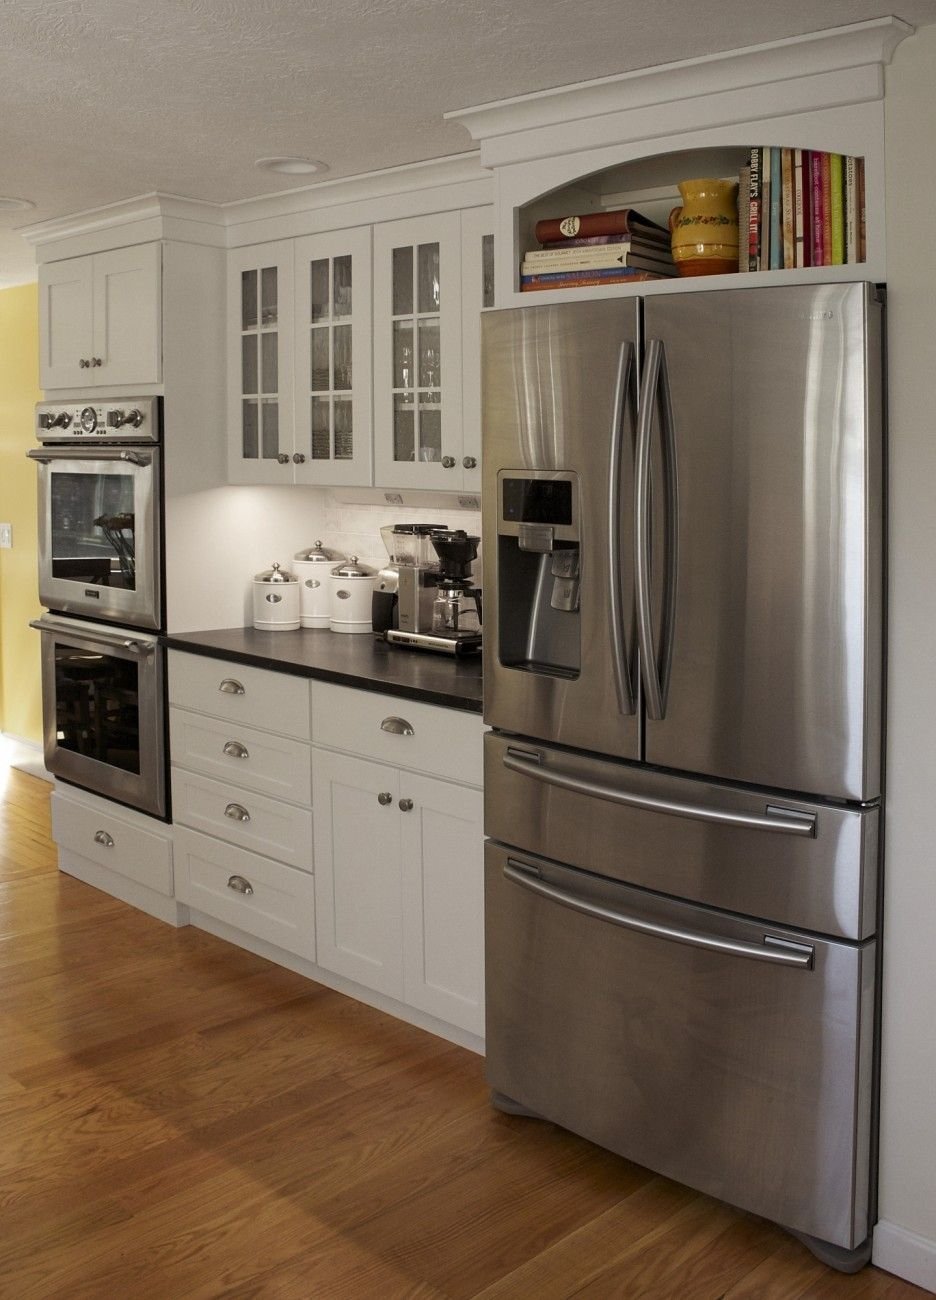 Холодильник Смег в интерьере кухни